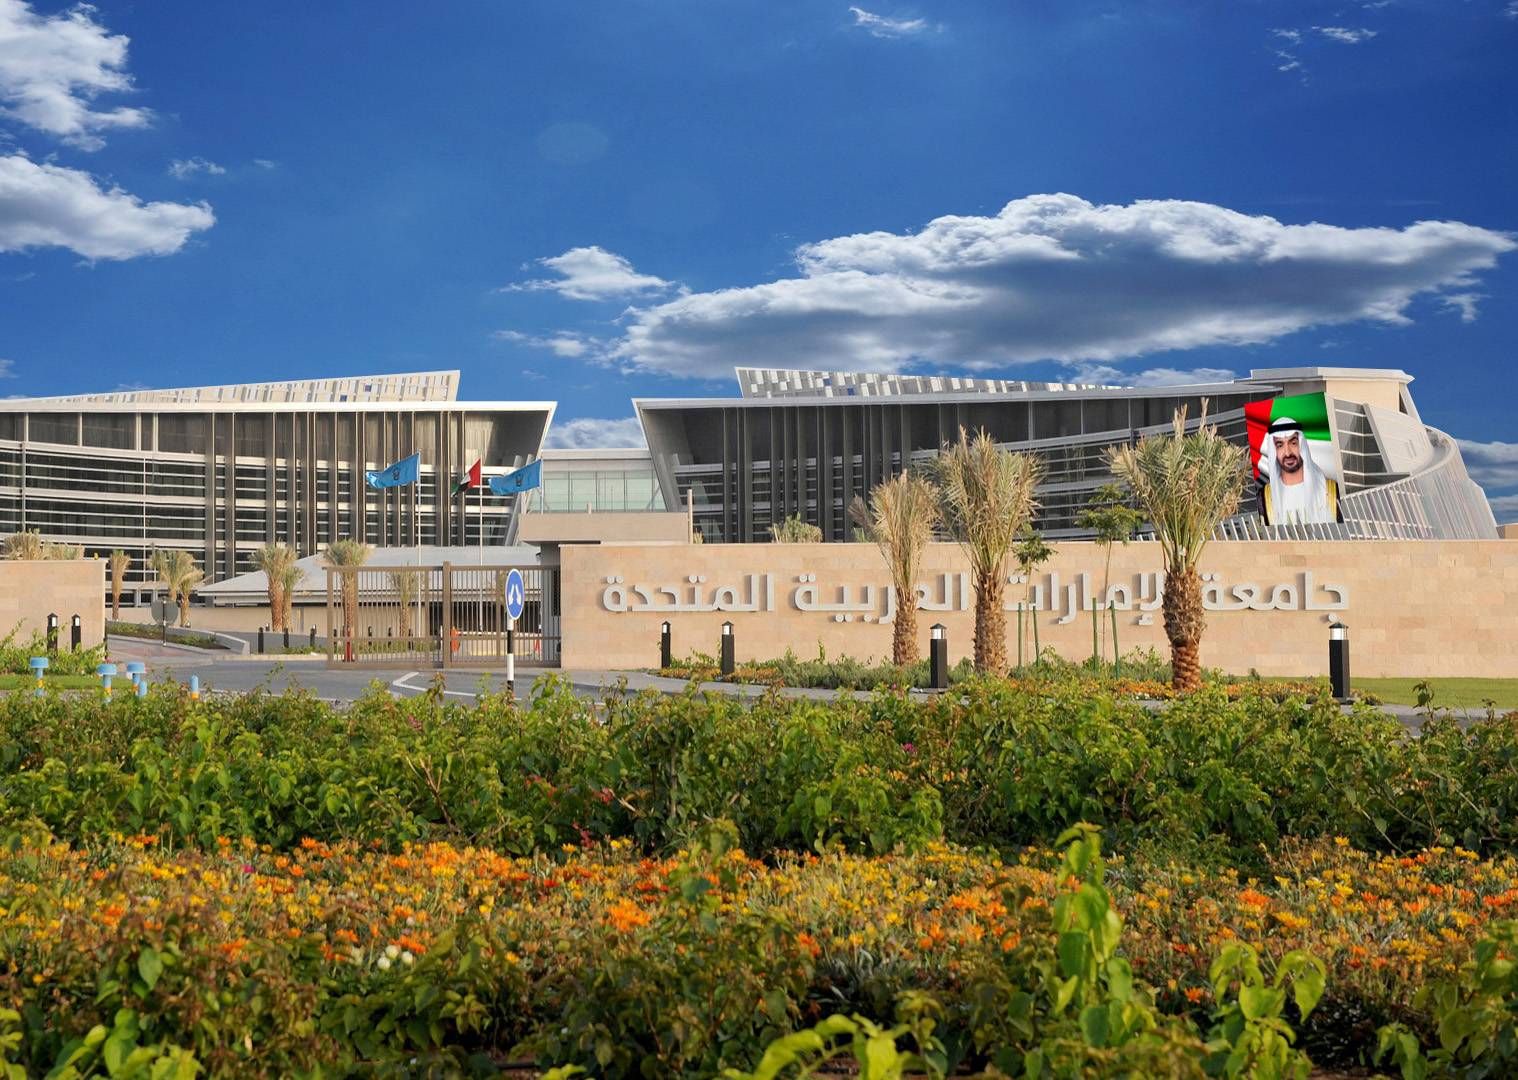 جامعة الإمارات الأولى محلياً والثالثة عربياً في تصنيف اتحاد الجامعات العربية